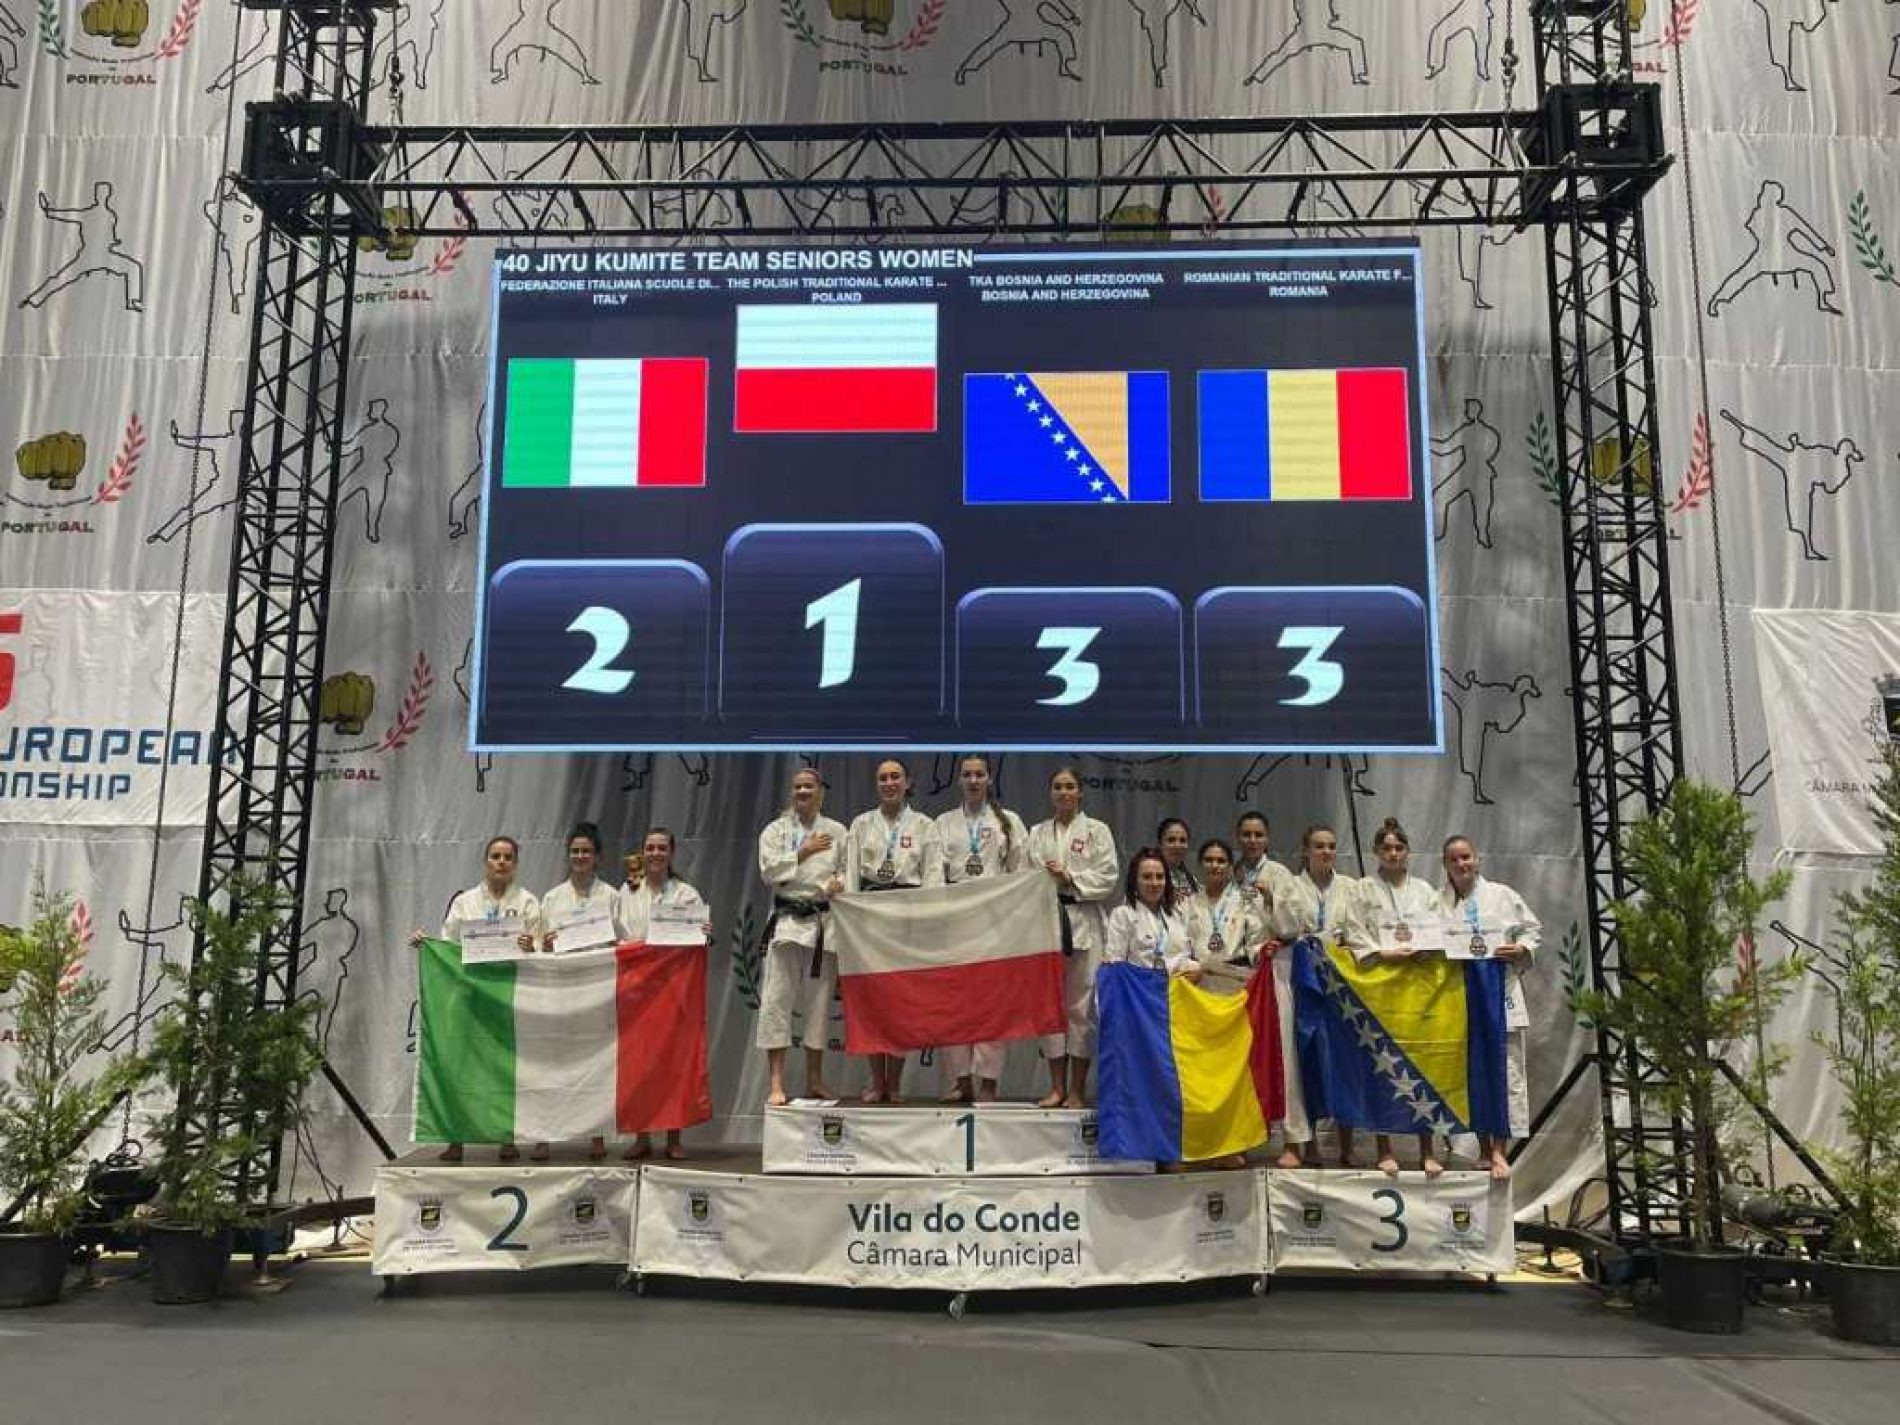 Bosanske karatašice osvojile treće mjesto na Prvenstvu Evrope u tradicionalnom karateu